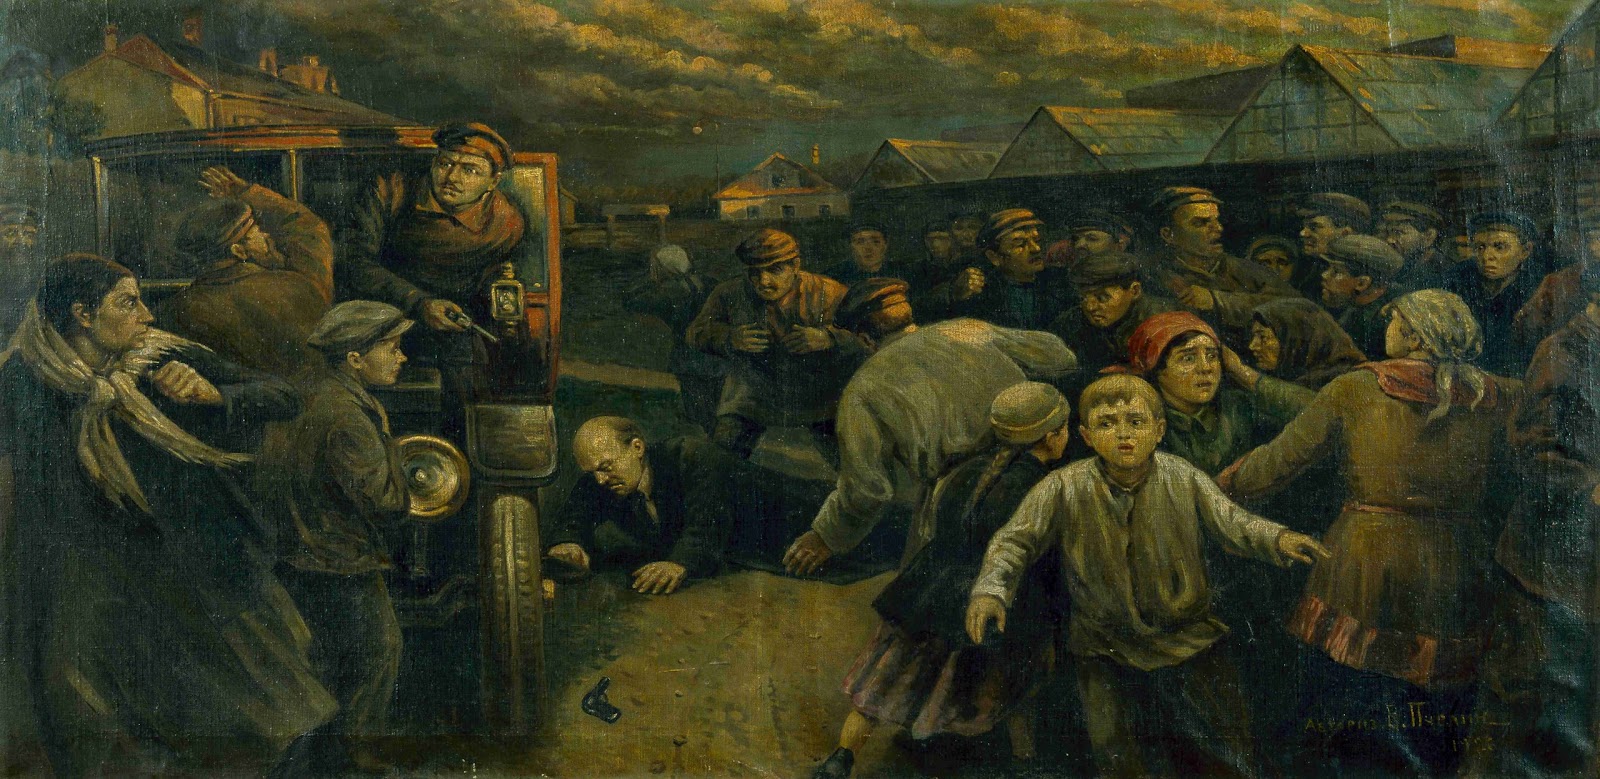 Painting Assassination attempt on V.I. Lenin in 1918 (Assassination  attempt of Kaplan on Comrade Lenin)